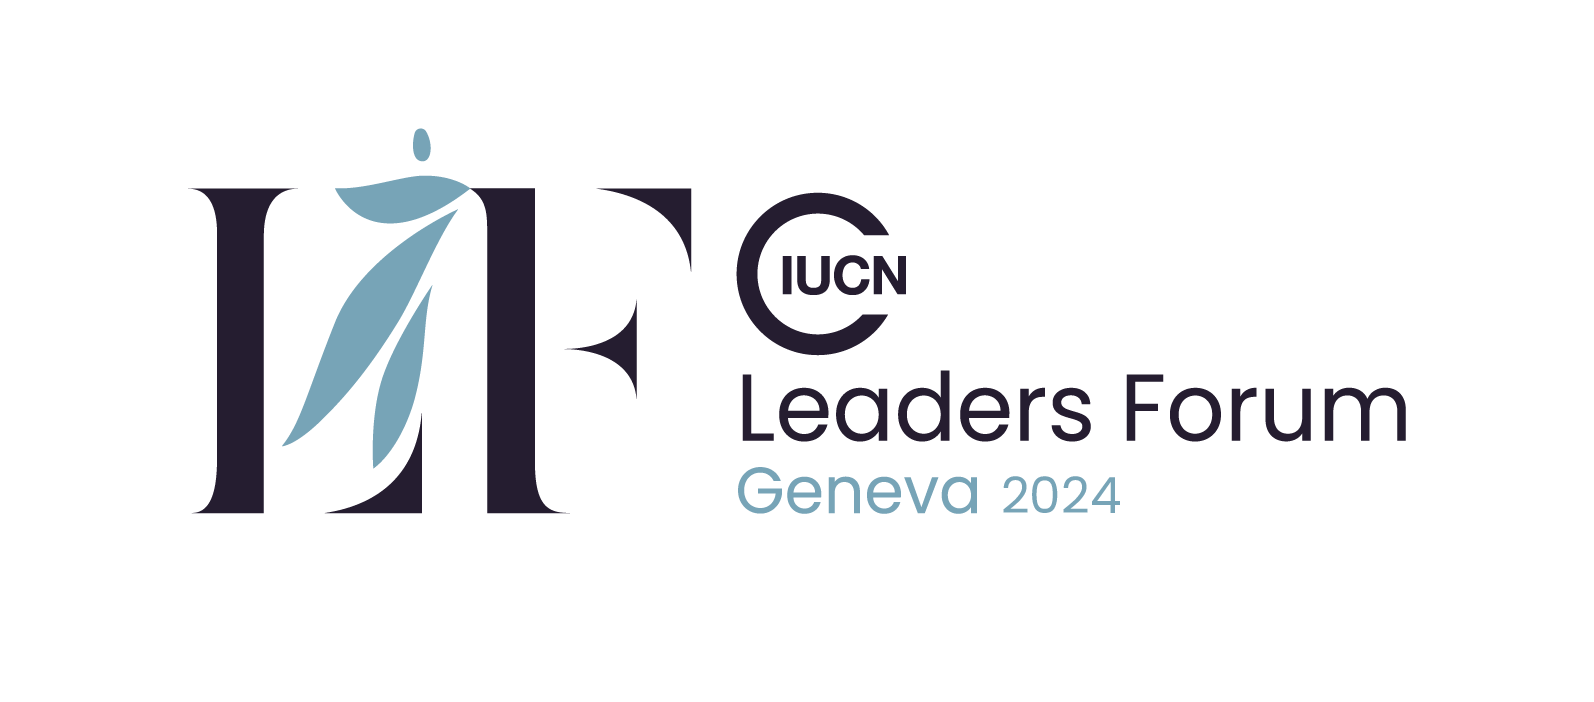 IUCN Leaders Forum Geneva 2024